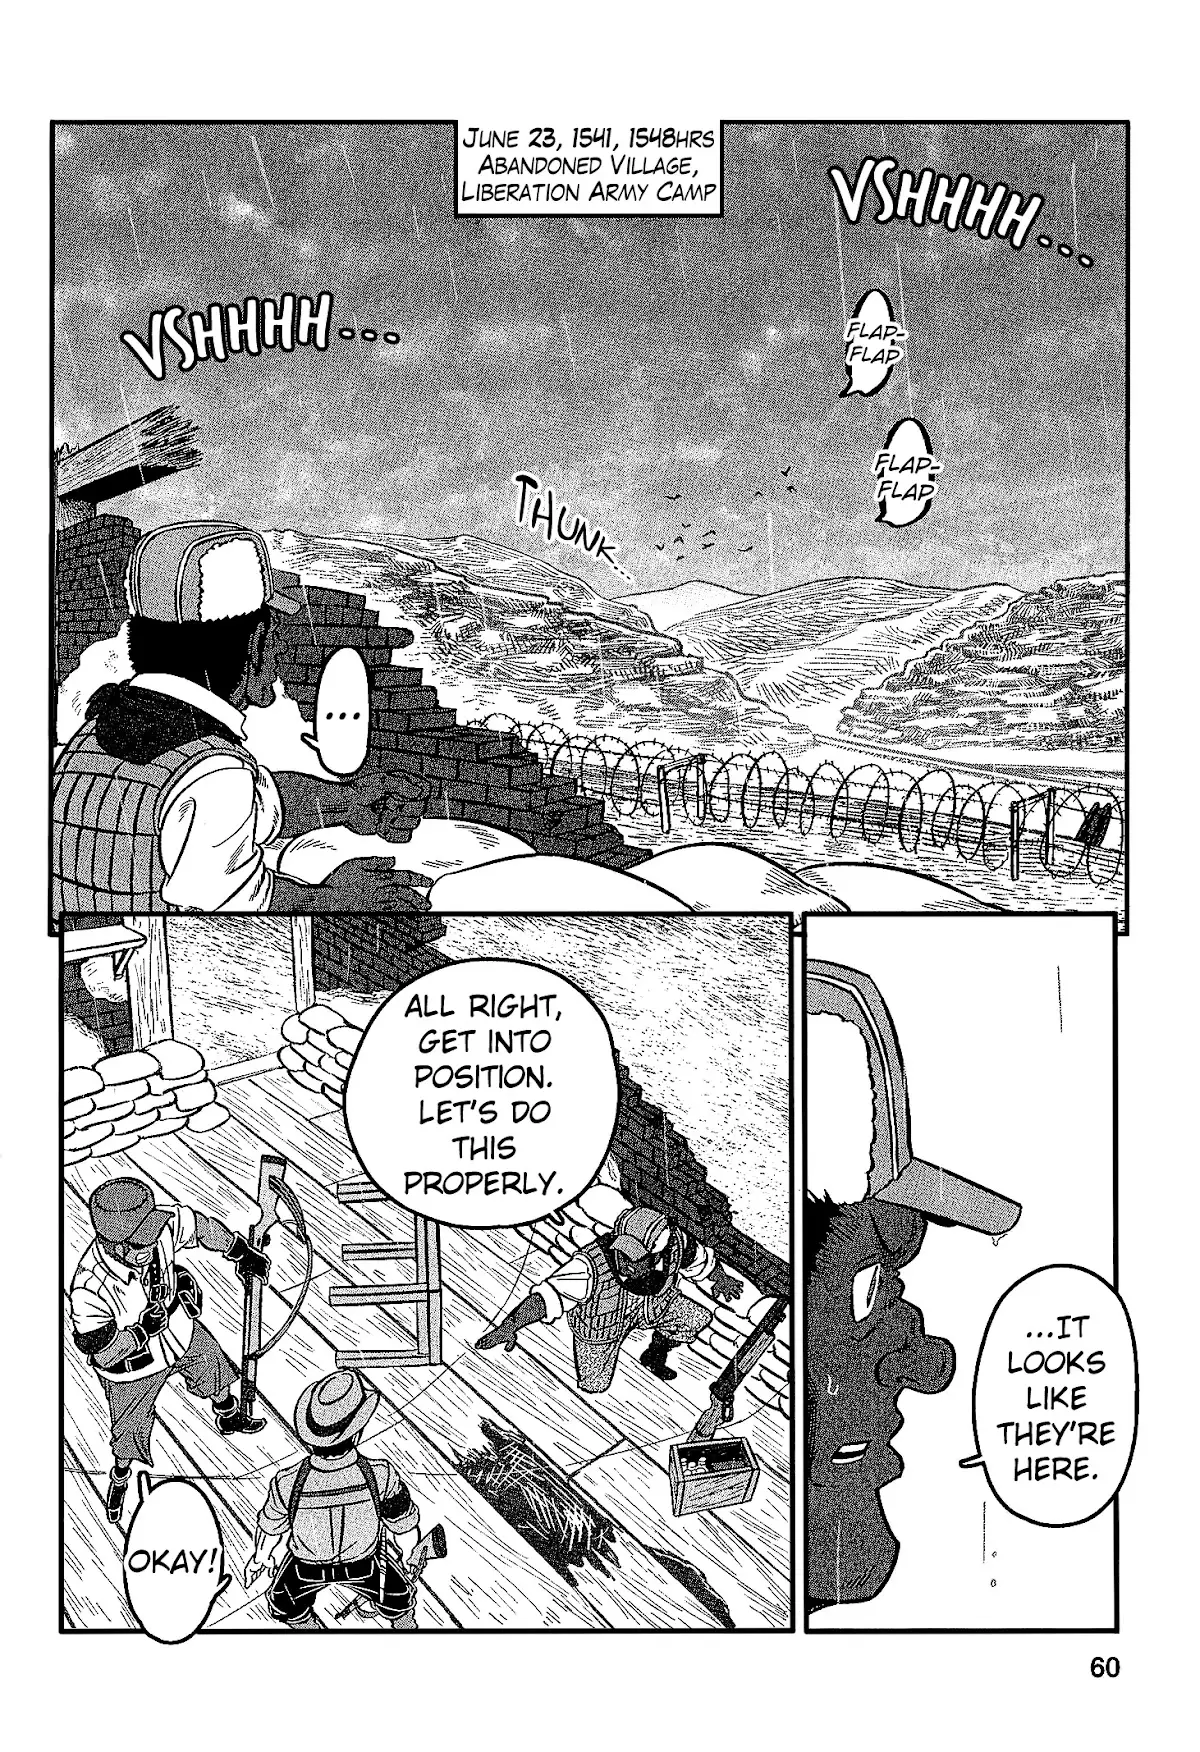 Groundless - Sekigan No Sogekihei - 26 page 18-803a22ac